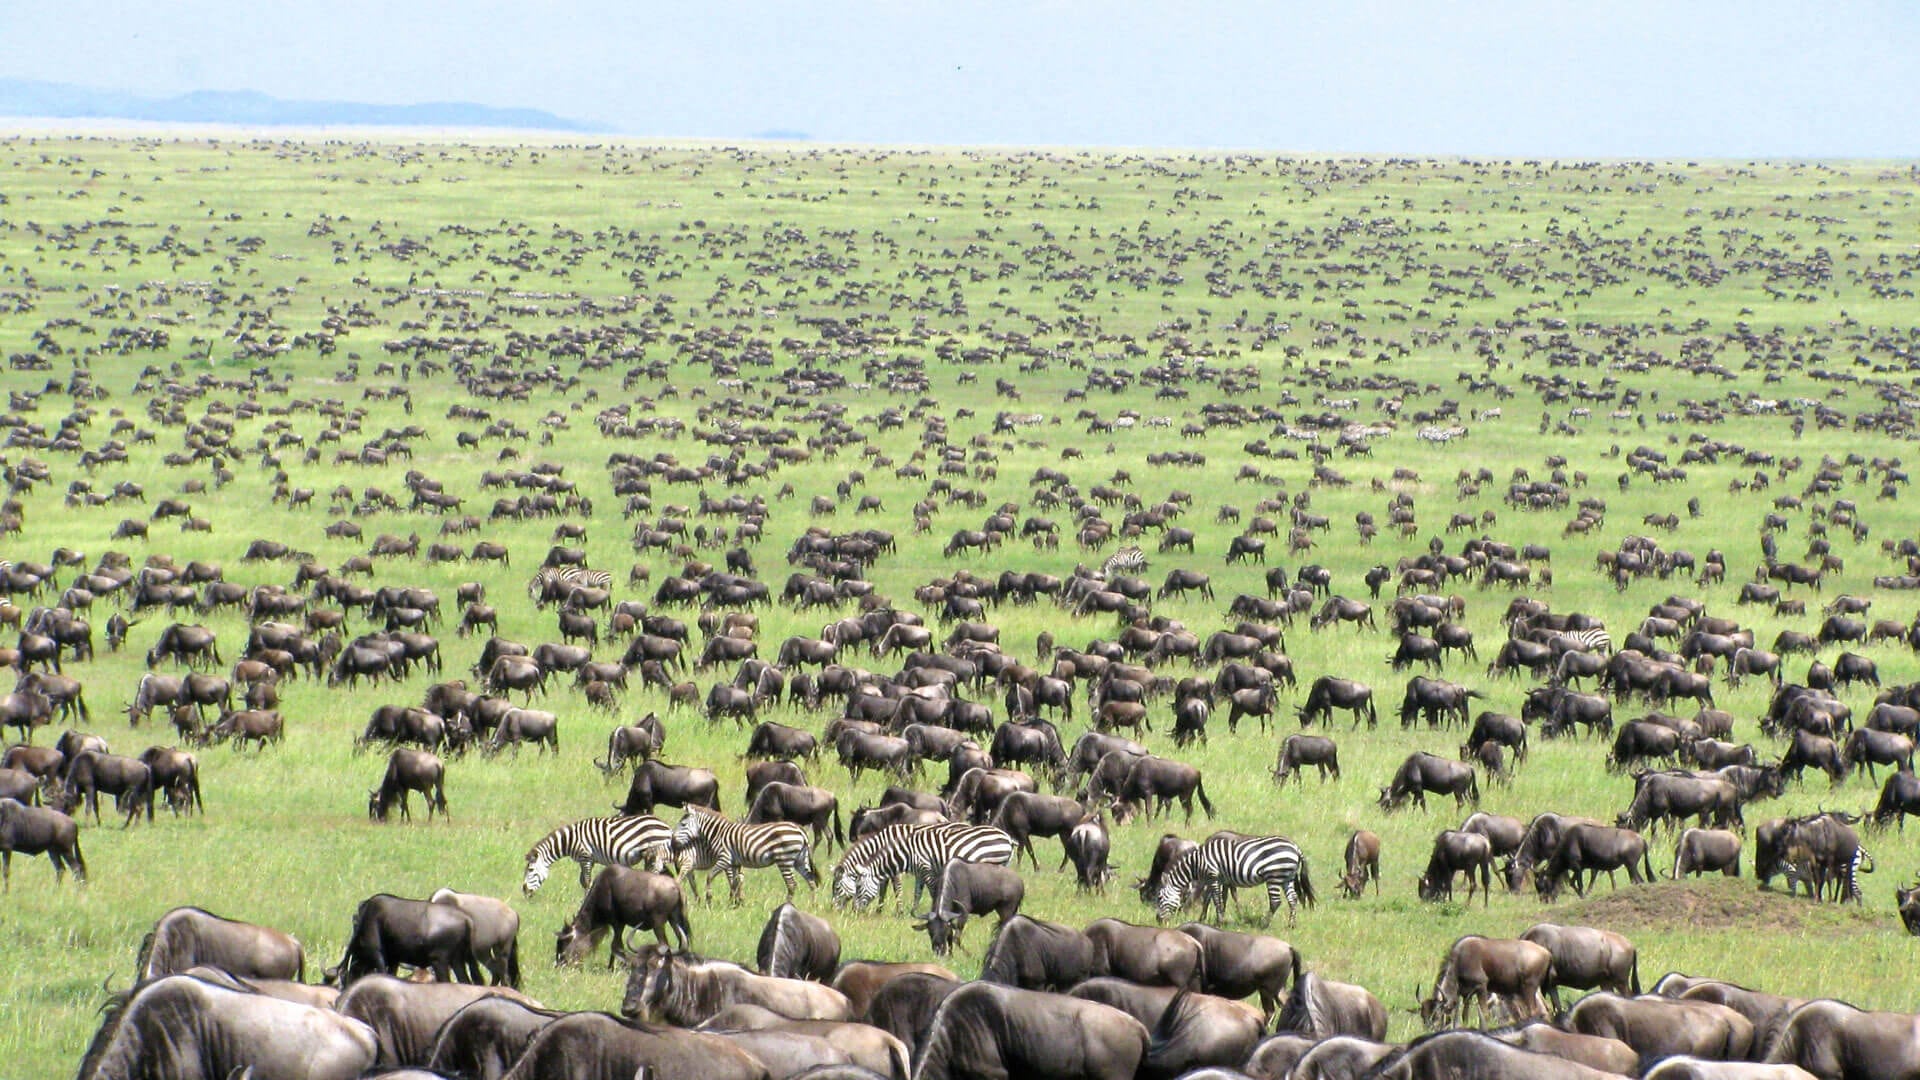 Herds of Wildebeests